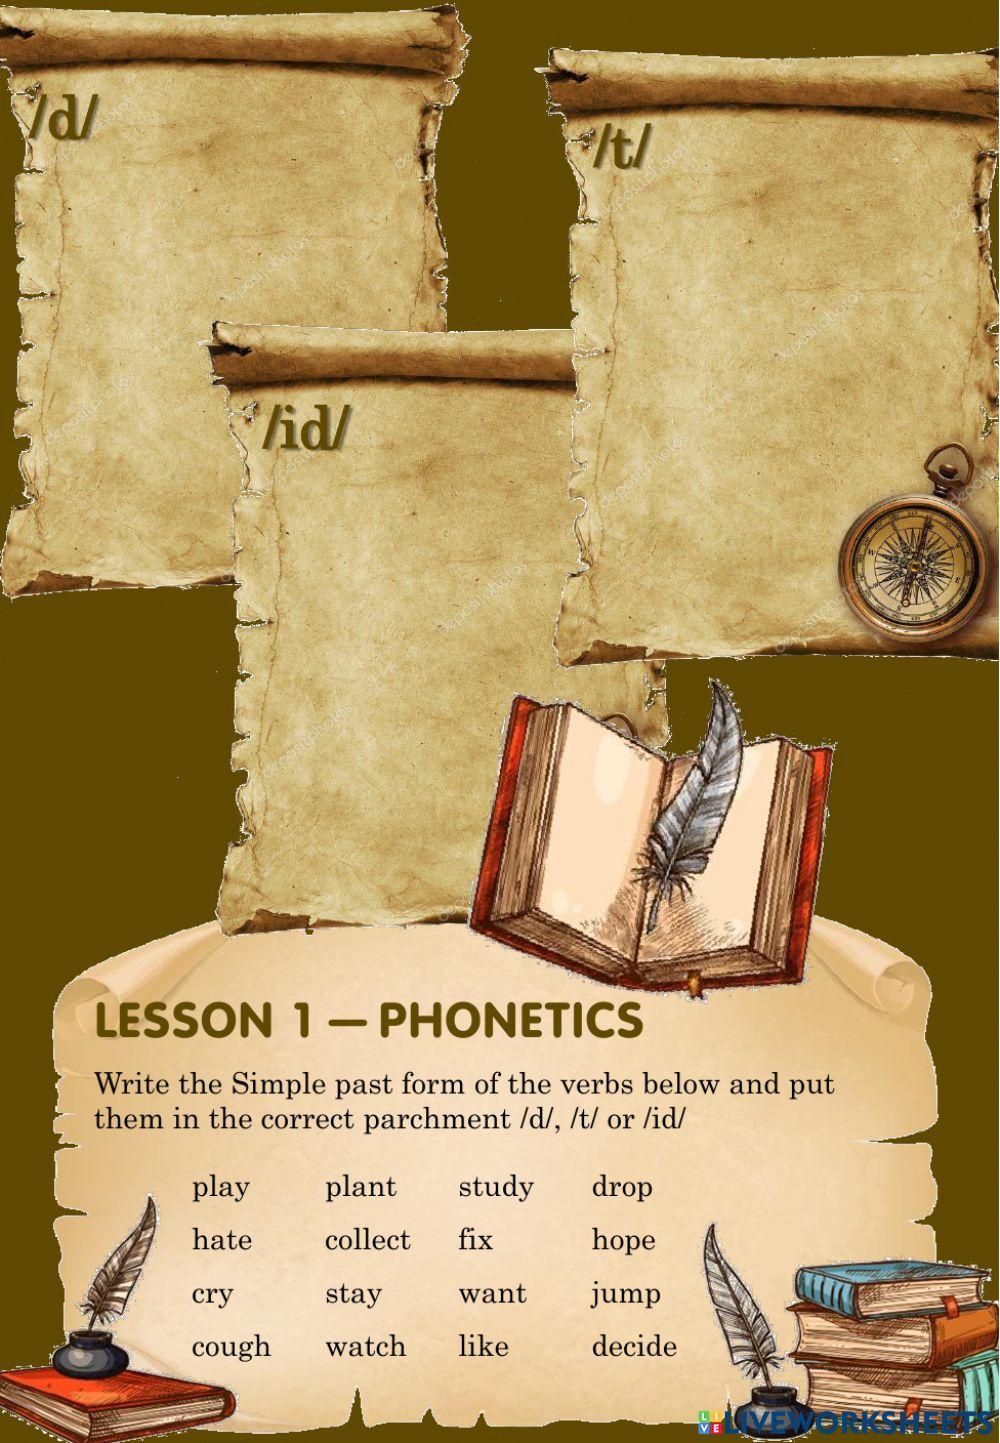 Phonetics - Lesson 1F